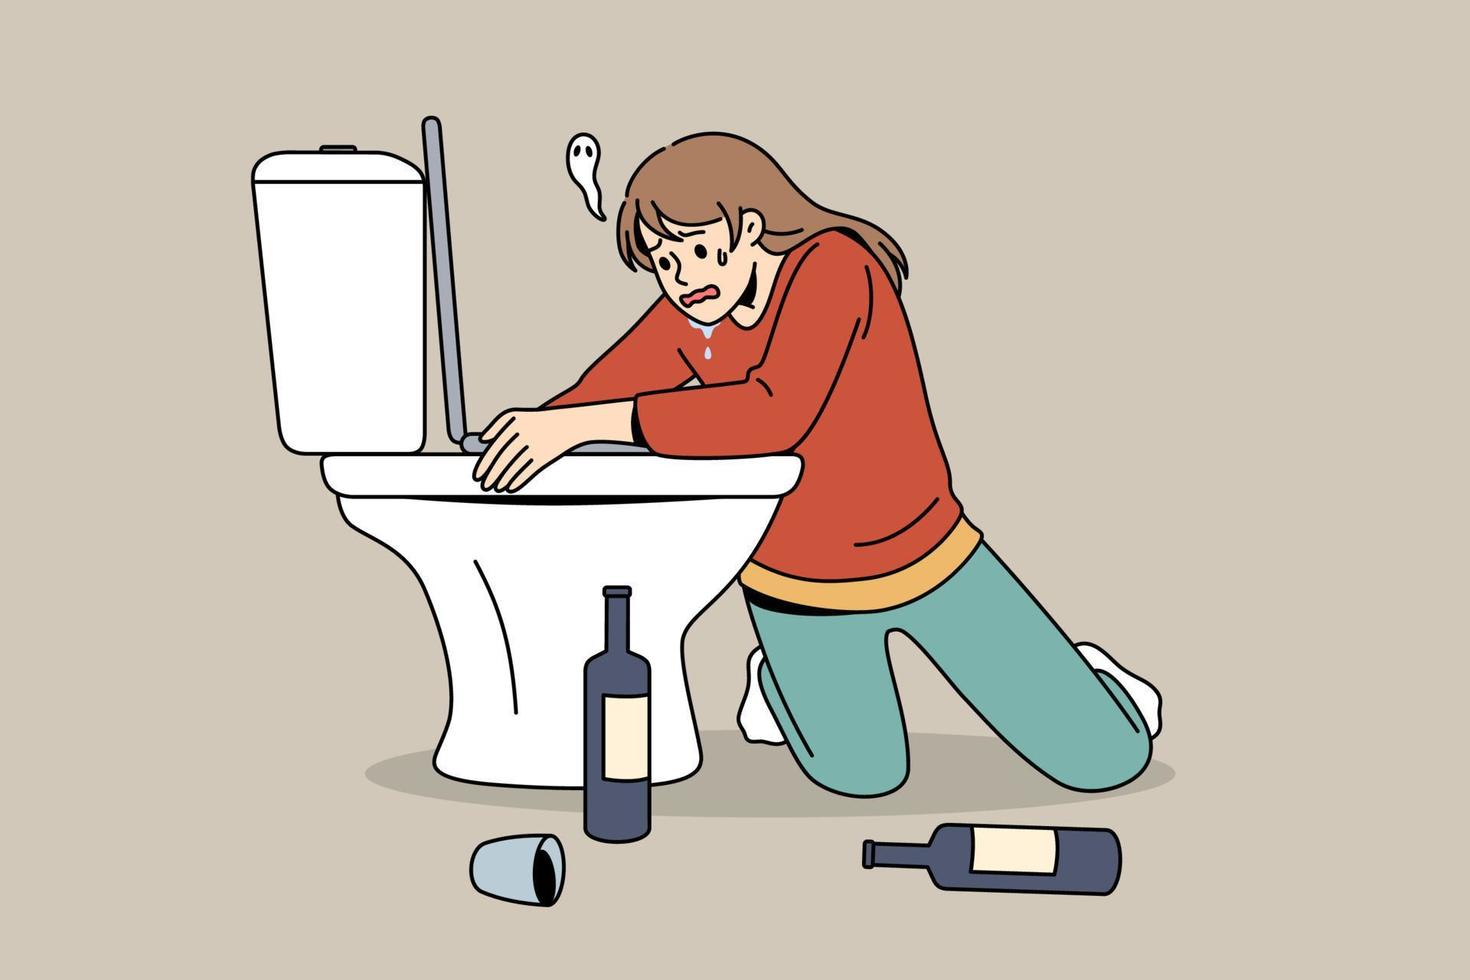 tendo ressaca depois do conceito de festa. personagem de desenho animado jovem sentada de joelhos abraçando o banheiro com garrafas de vinho em pé no chão se sentindo doente ilustração vetorial vetor